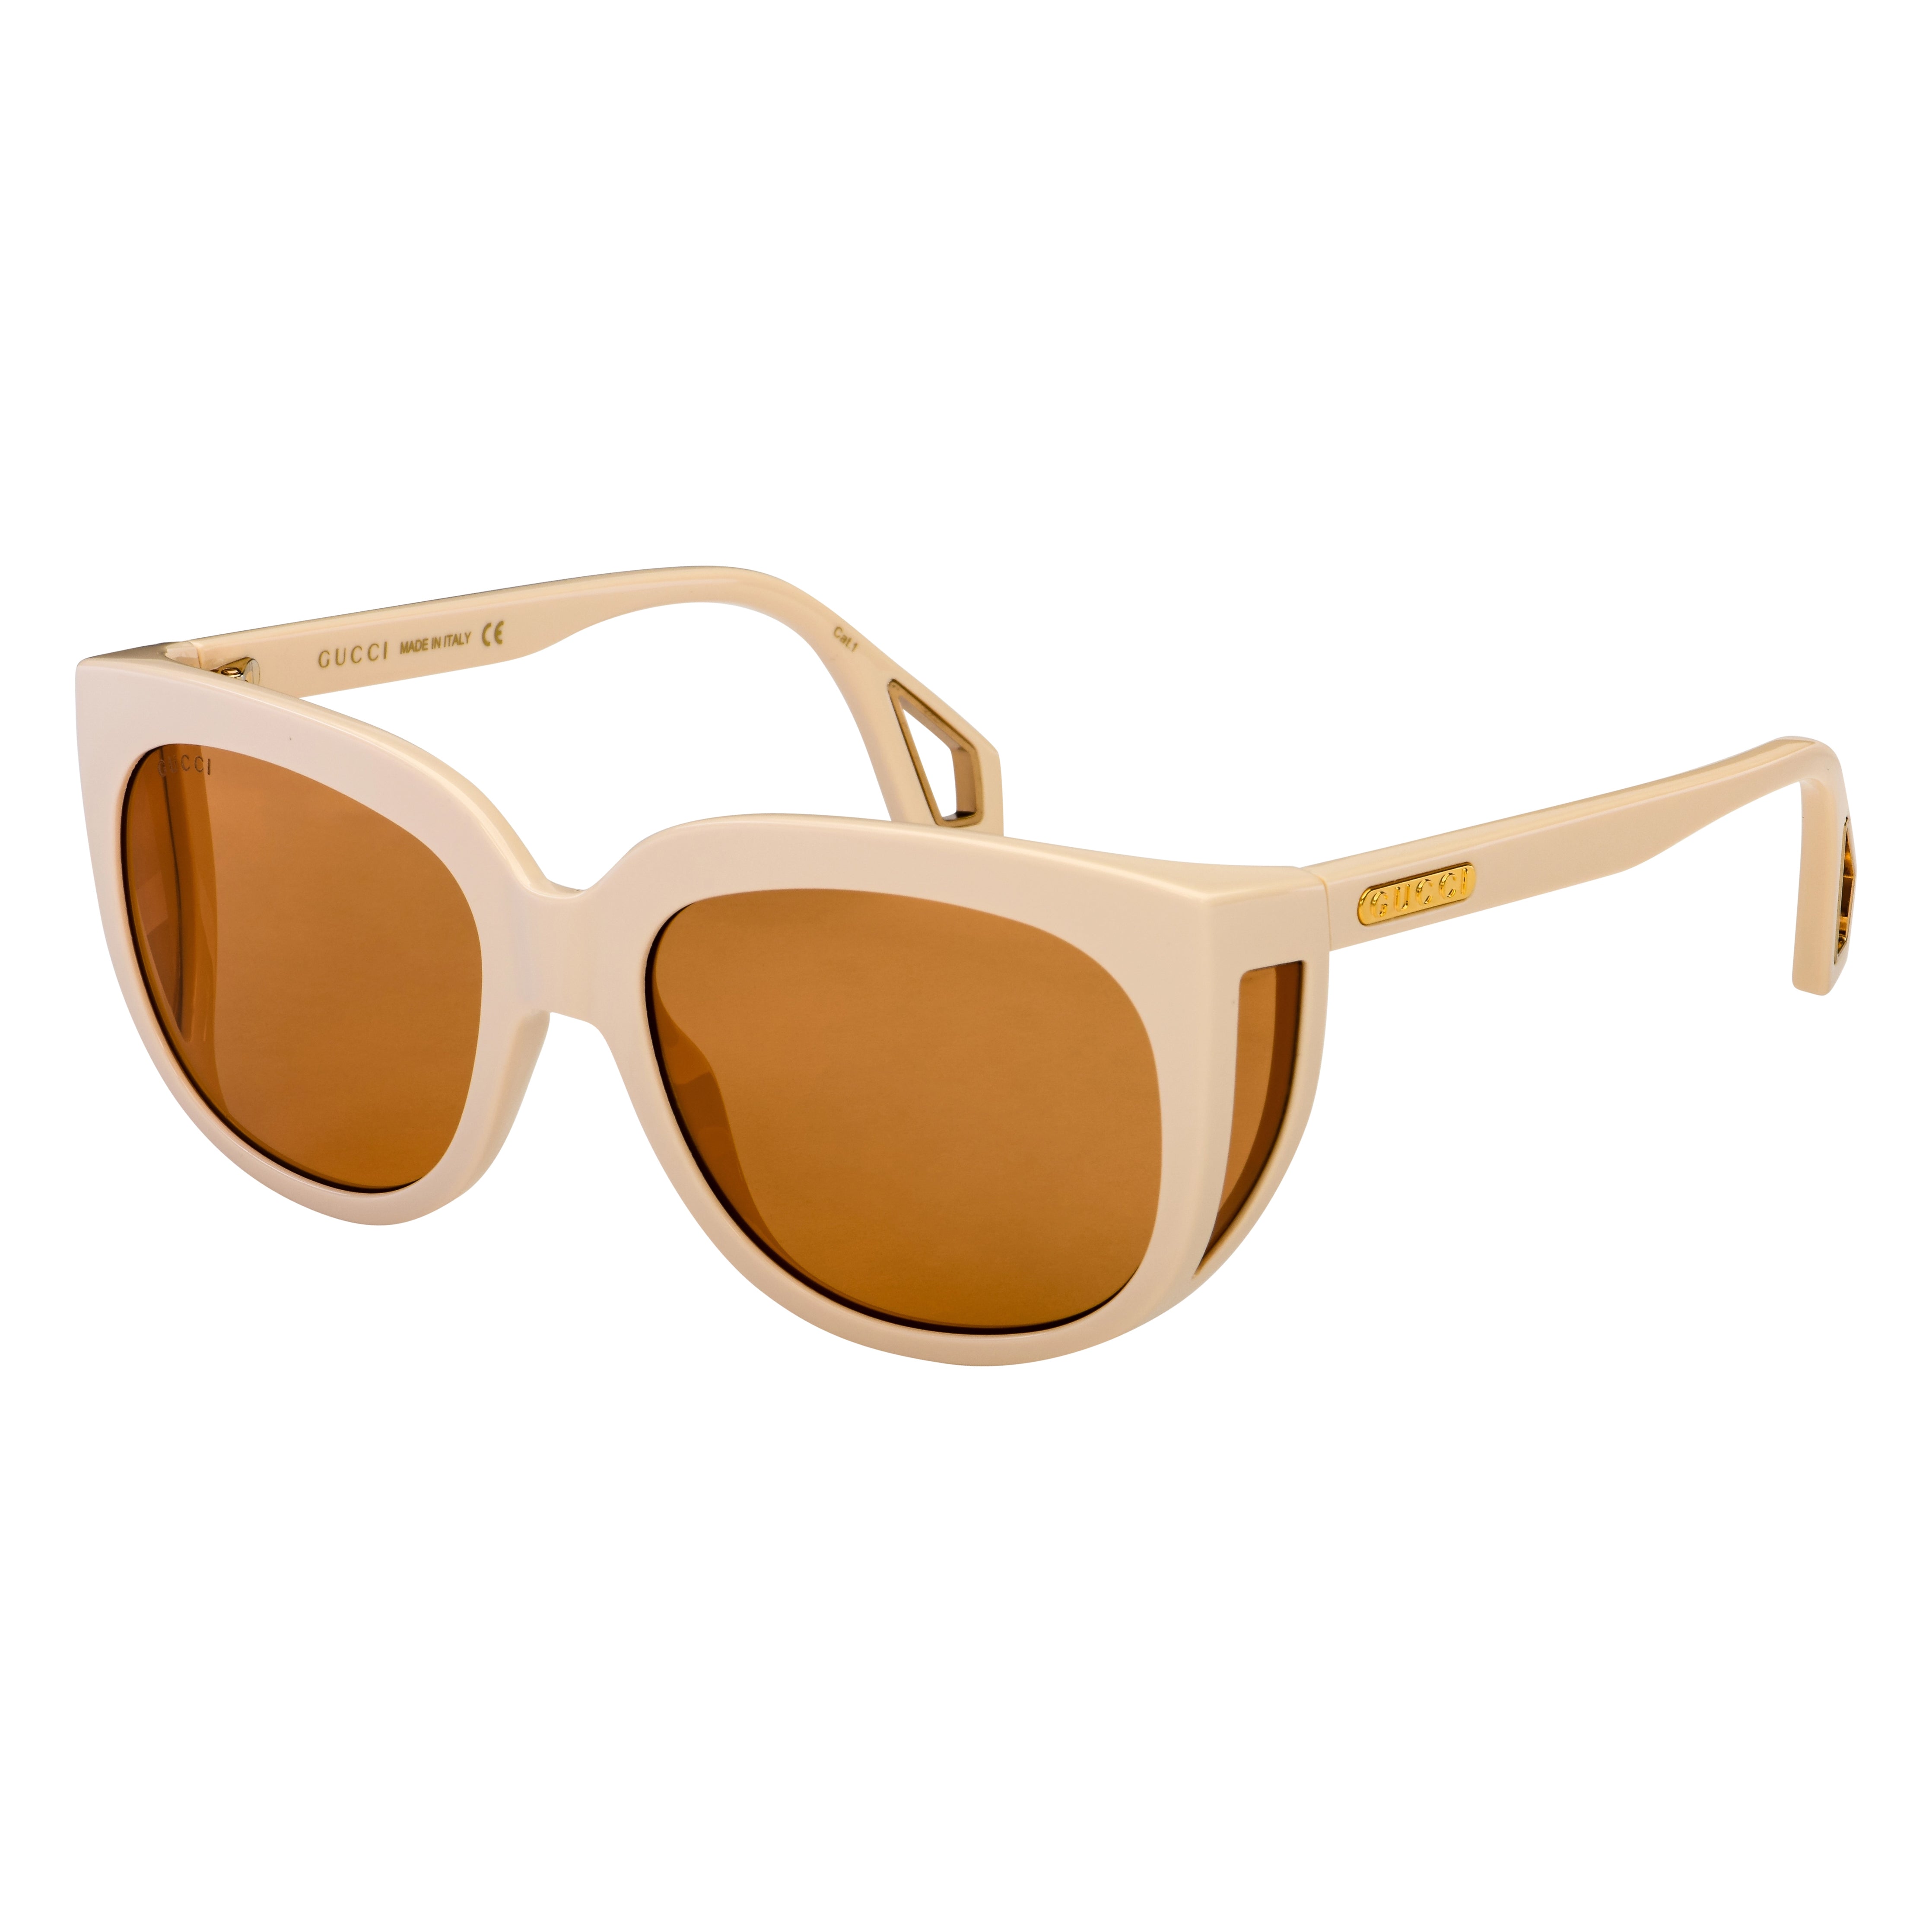 Gucci Women's Sunglasses Wraparound Rectangle Cream GG0468S-004 57